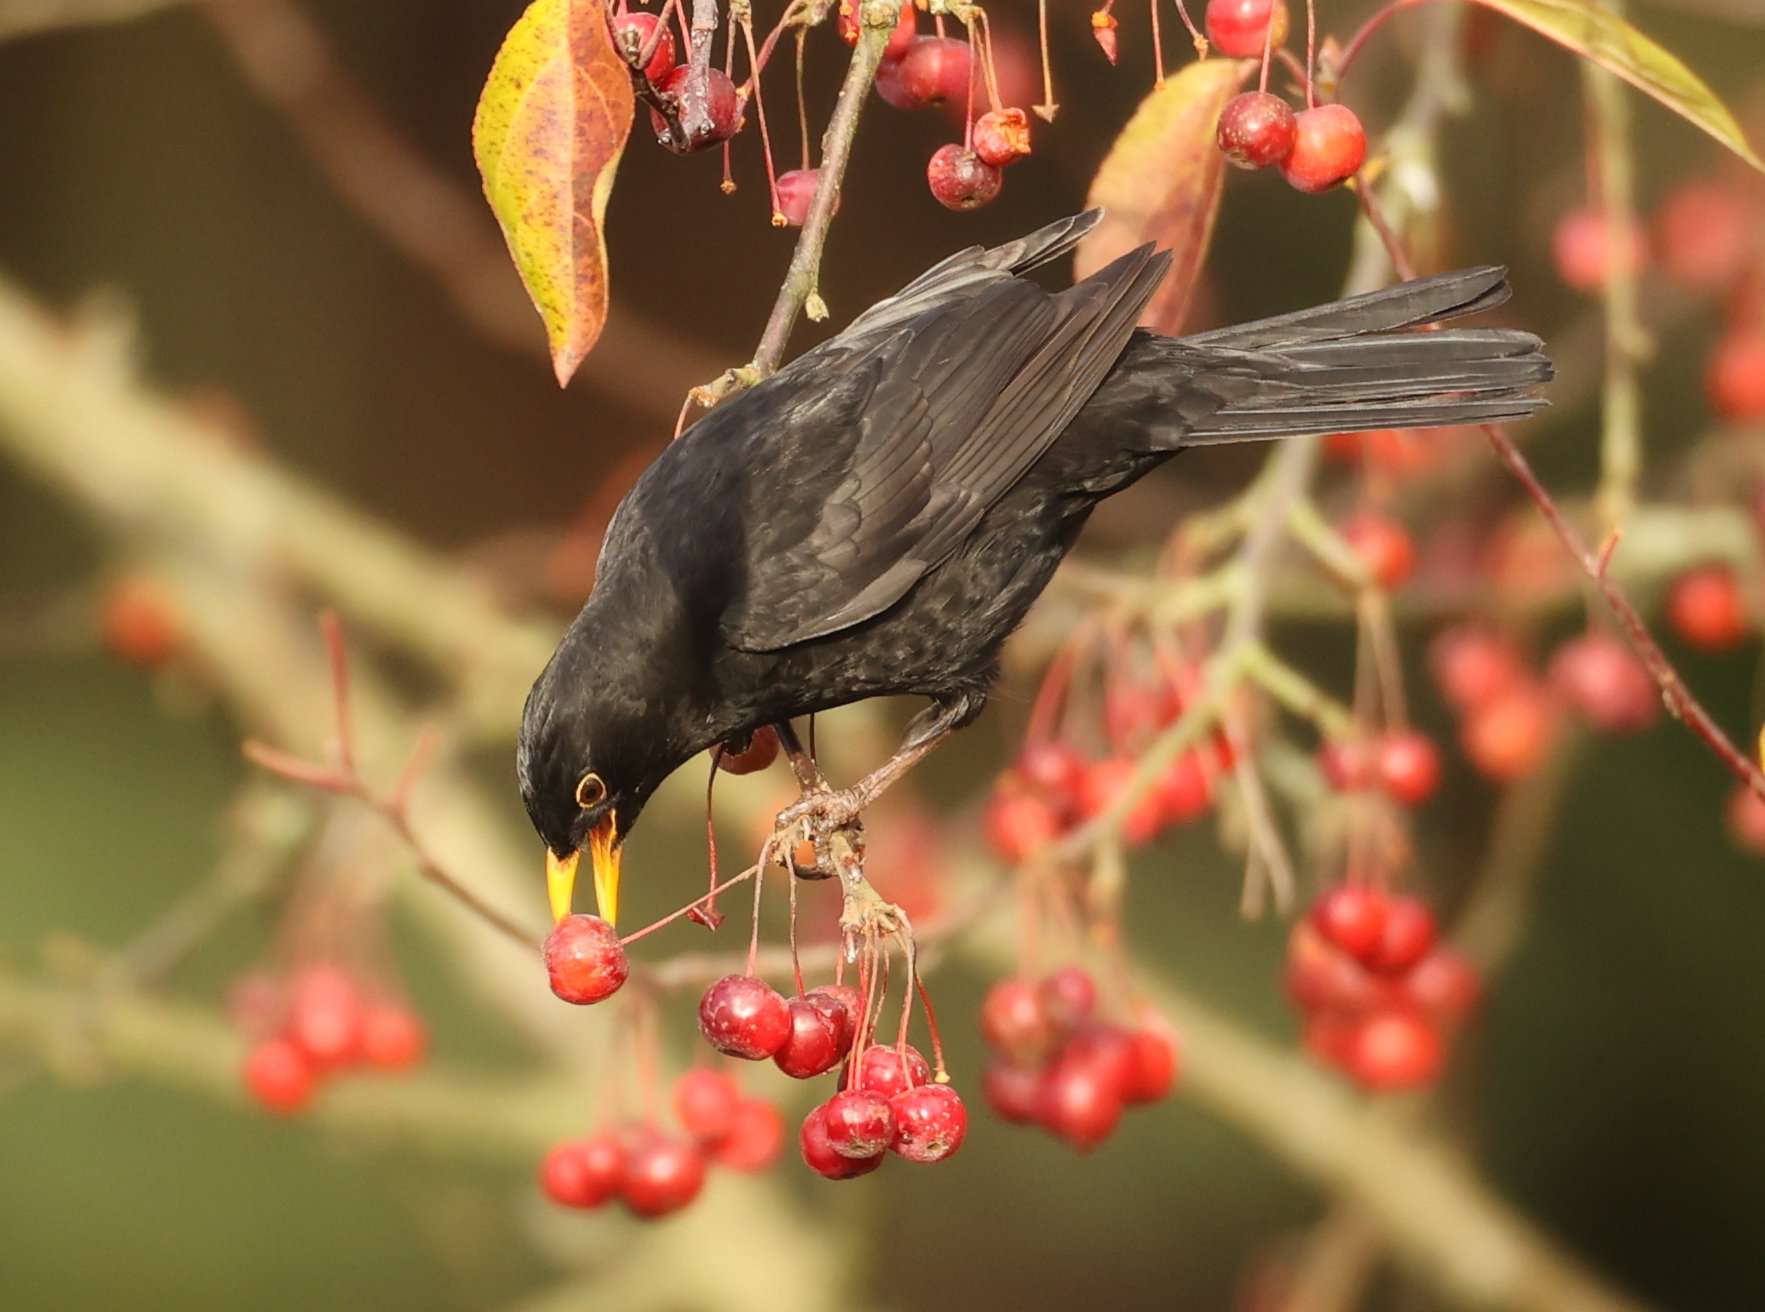 Blackbird by Steve Hopper at Killerton